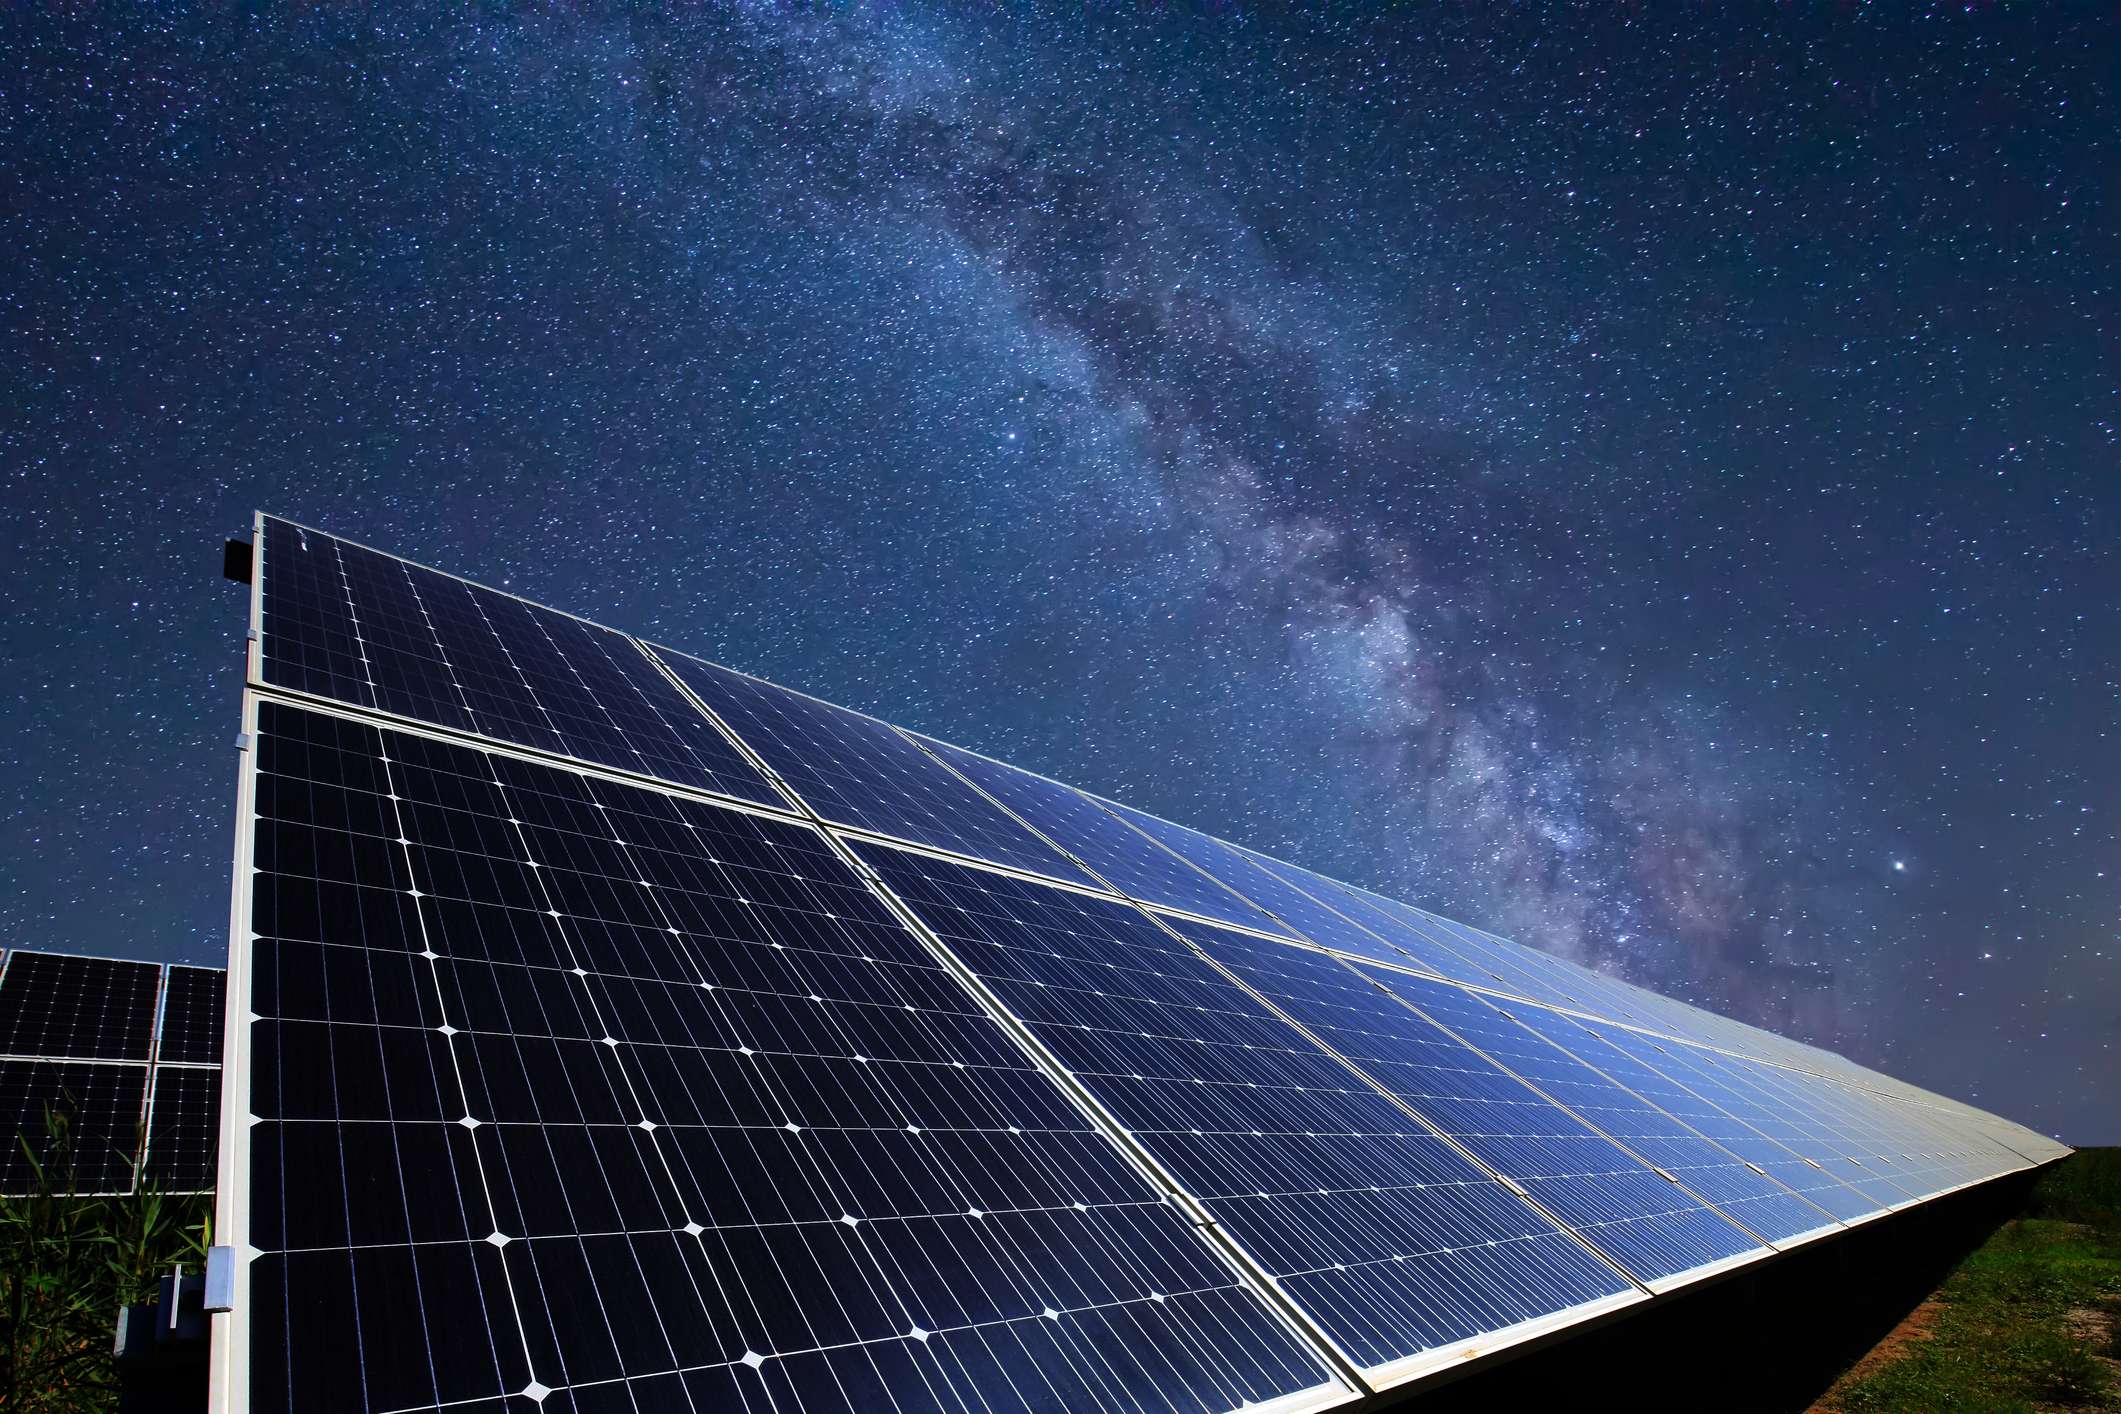 Novos paineis solares que geram energia eletrica na ausencia do sol podem revolucionar o mercado